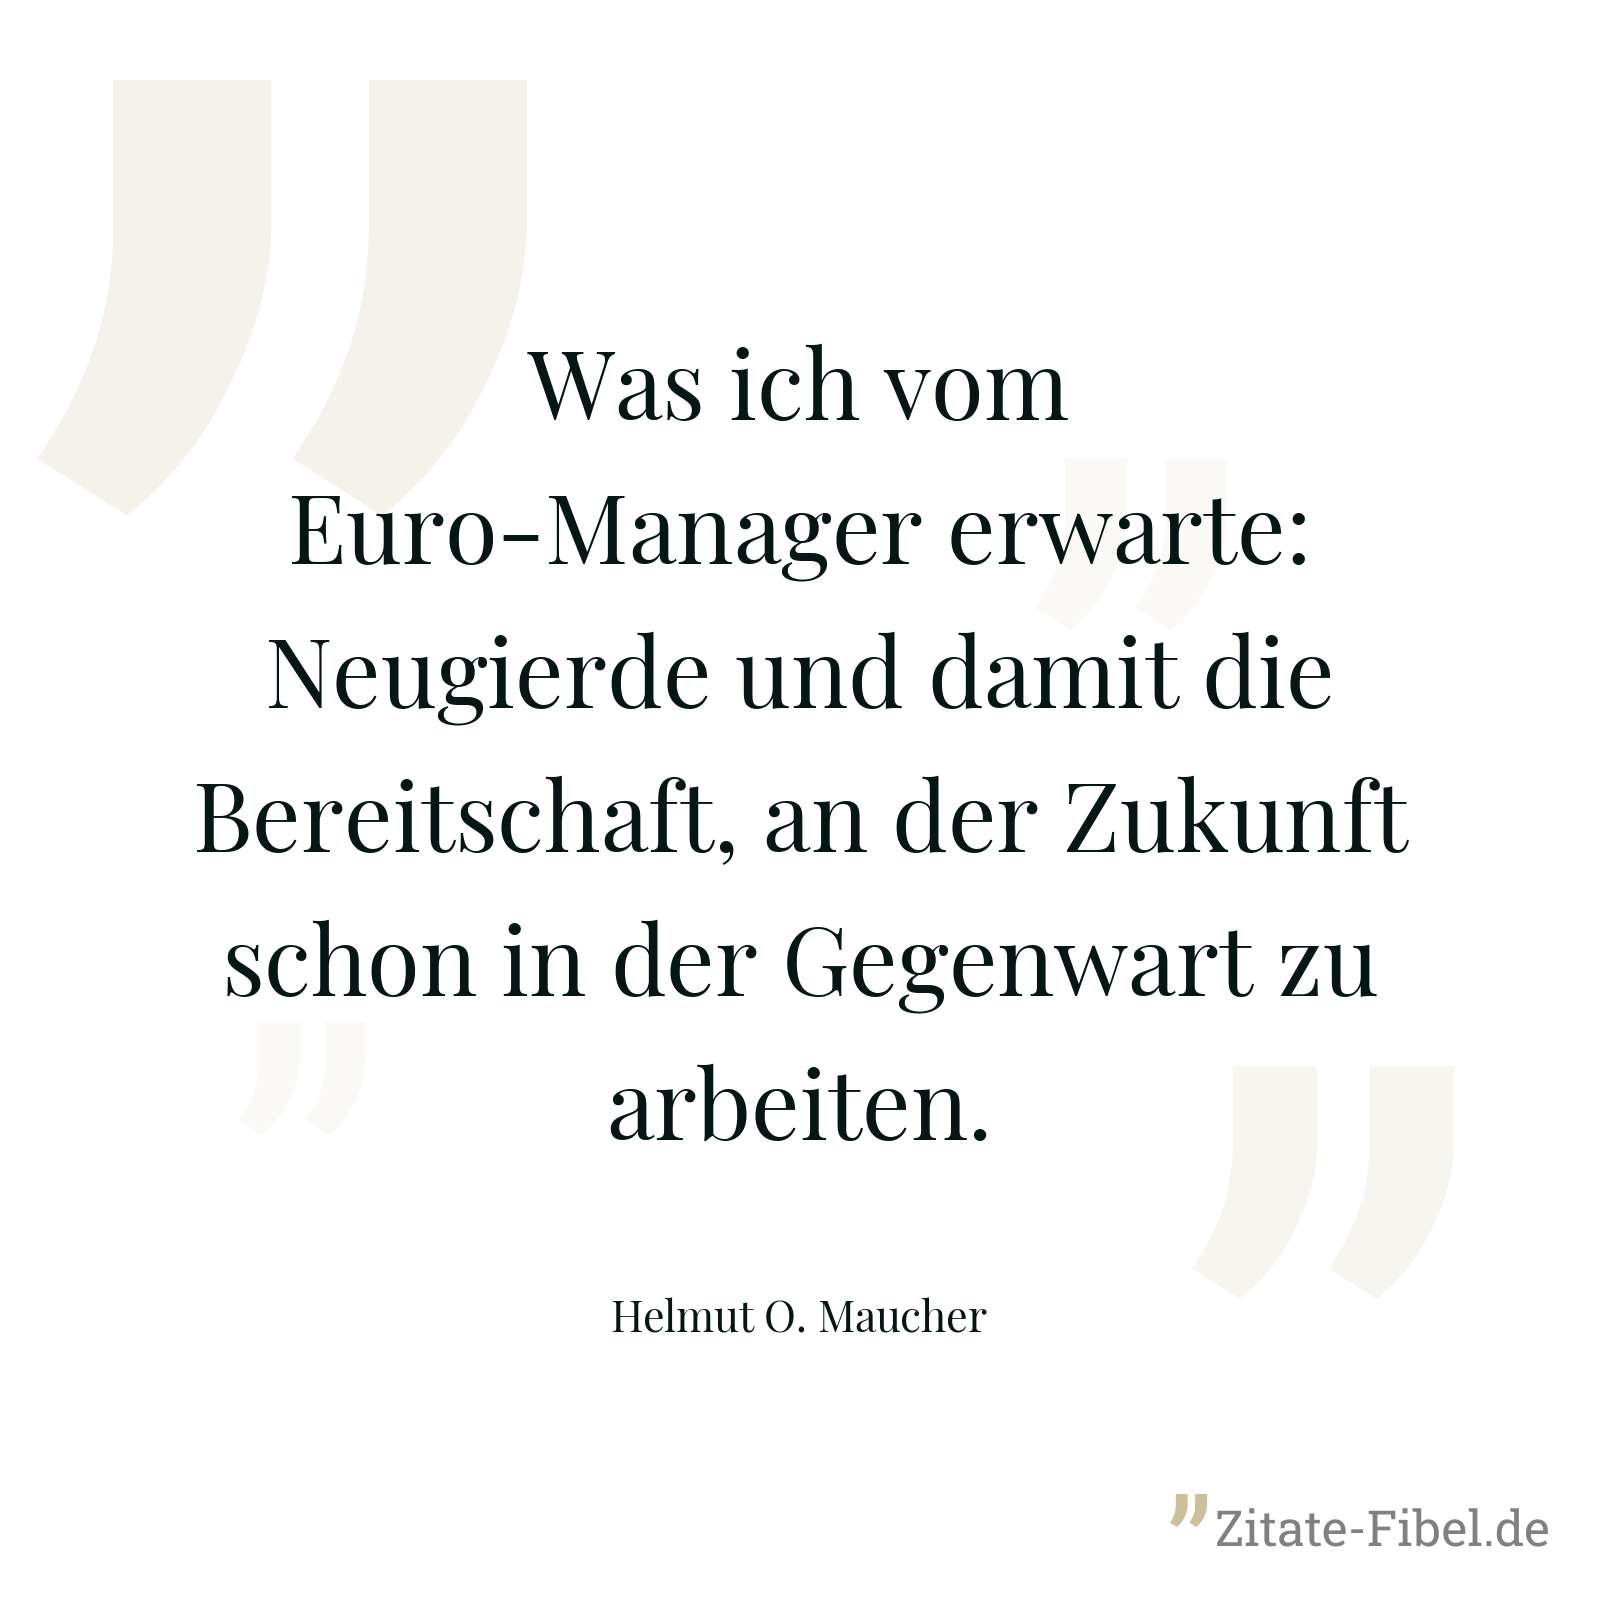 Was ich vom Euro-Manager erwarte: Neugierde und damit die Bereitschaft, an der Zukunft schon in der Gegenwart zu arbeiten. - Helmut O. Maucher